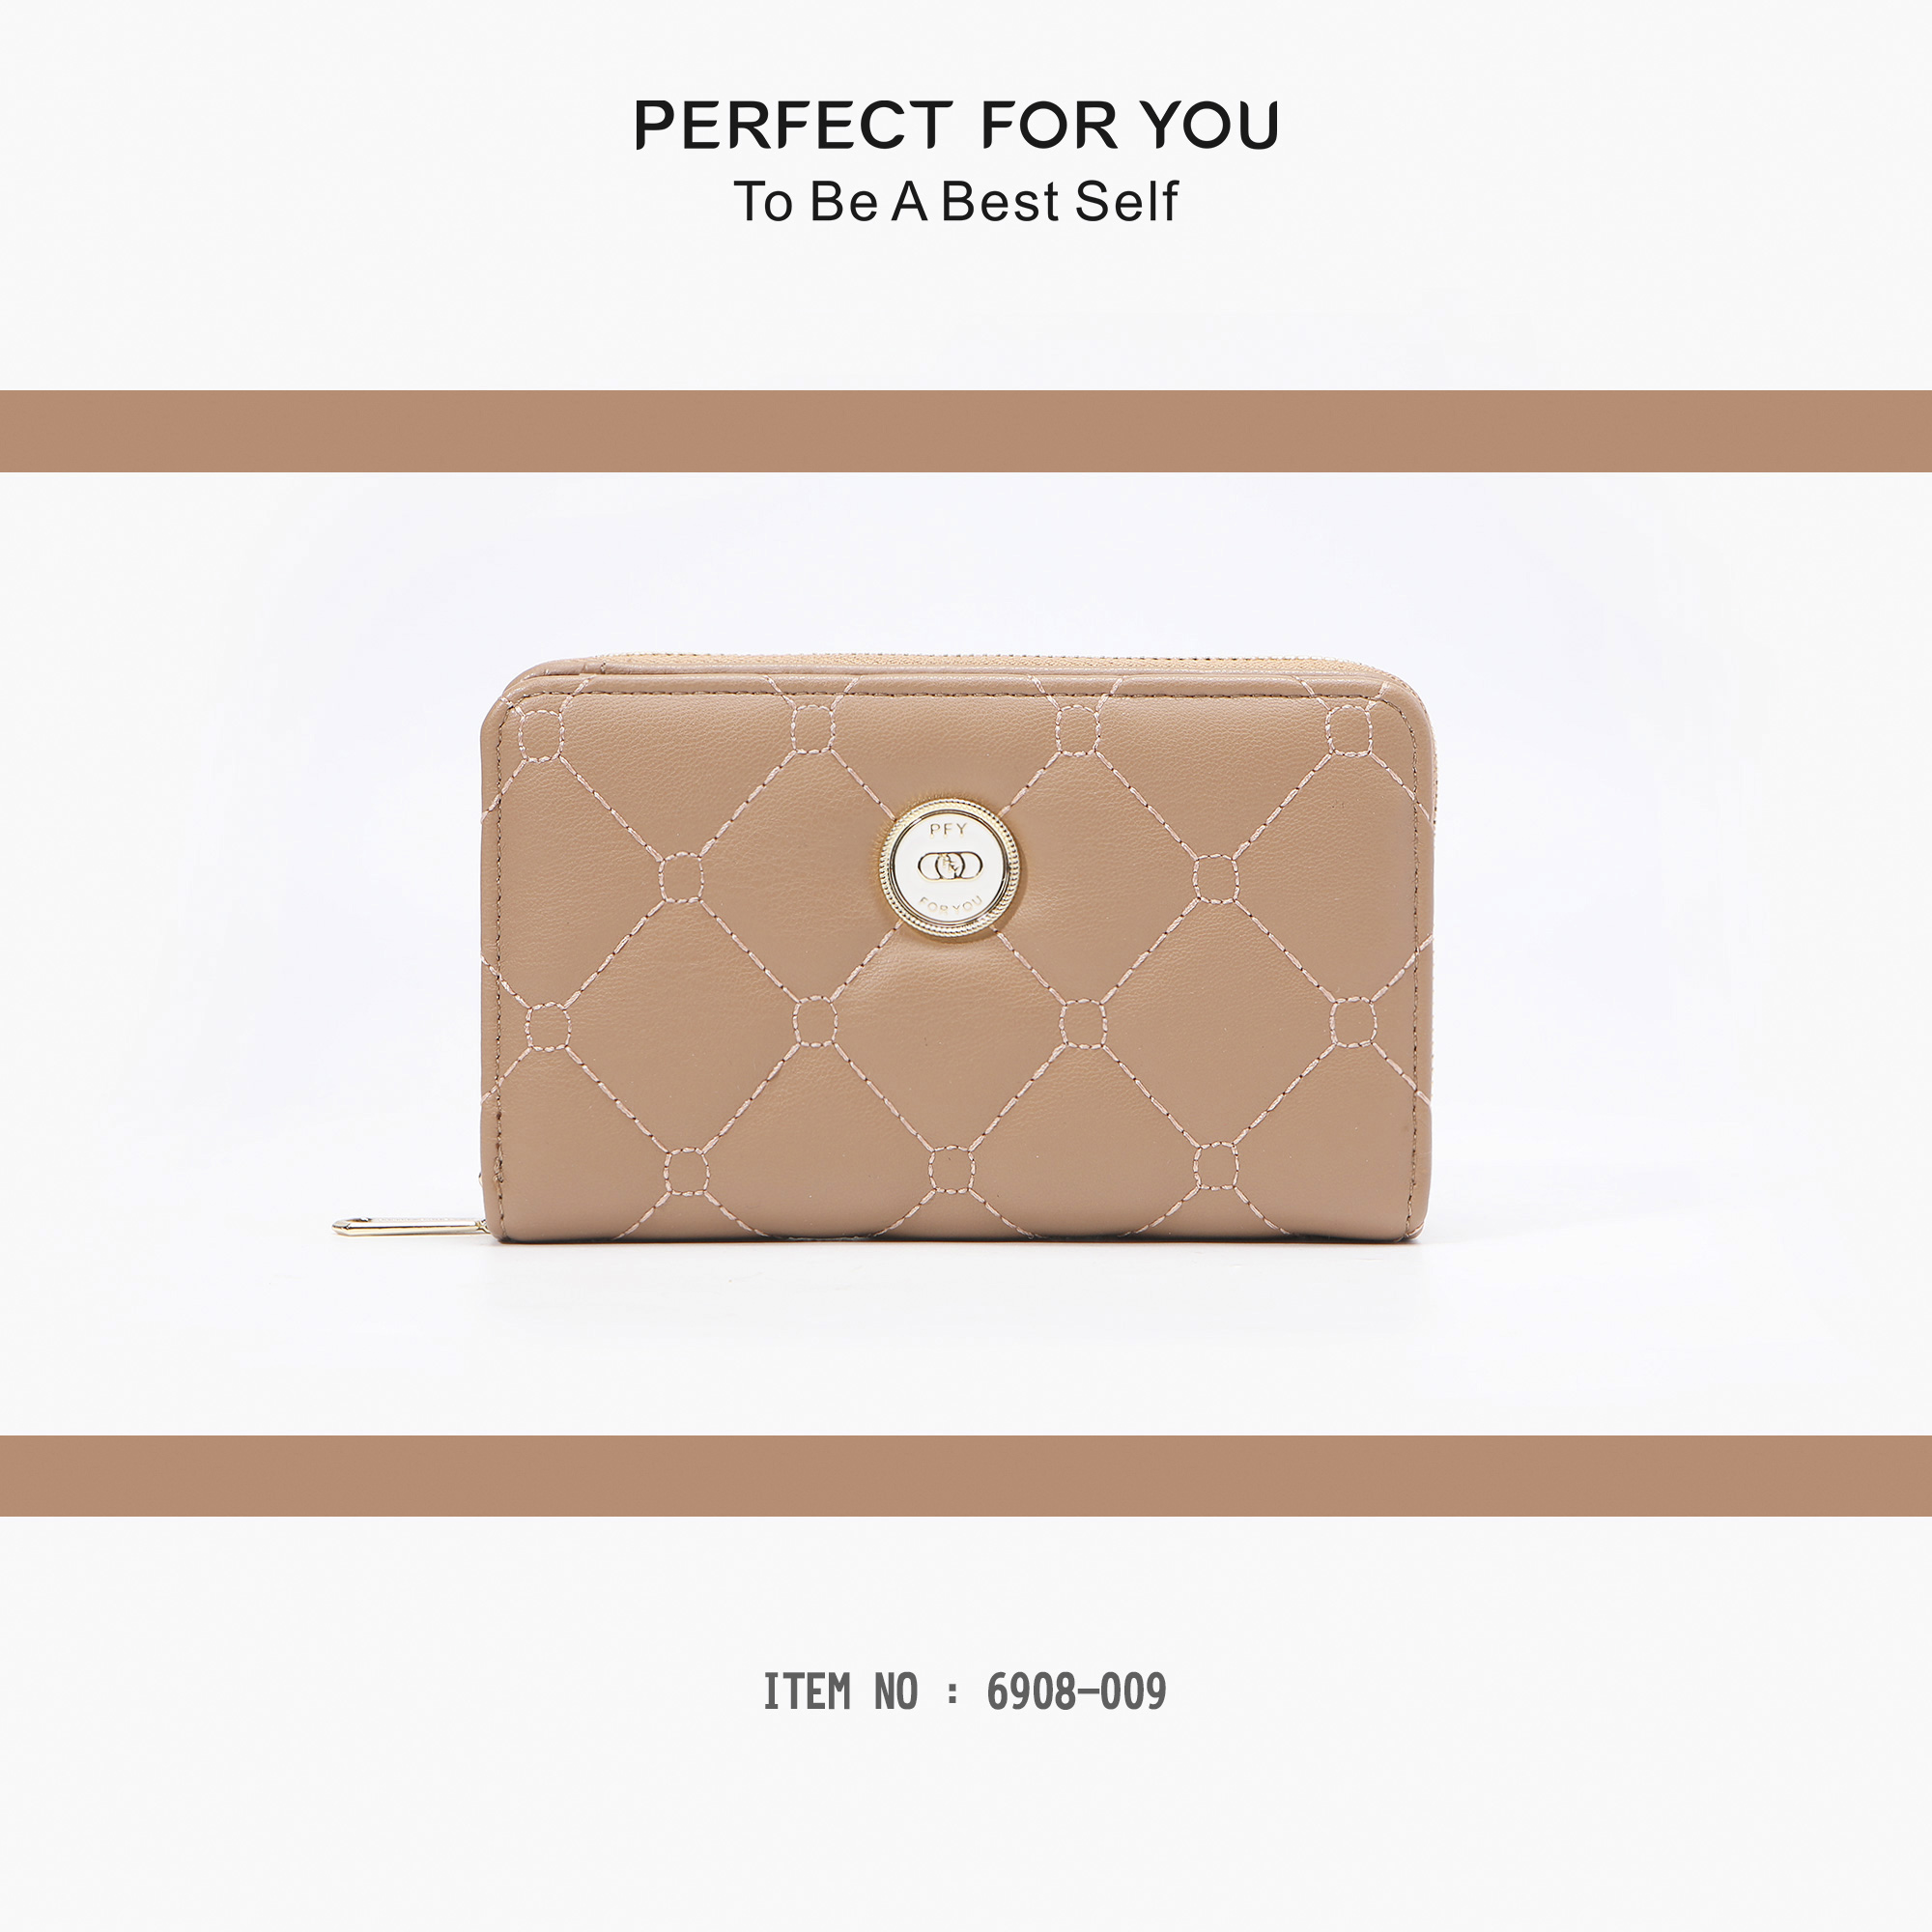 รูปภาพเพิ่มเติมเกี่ยวกับ กระเป๋าสตางค์ PERFECT FOR YOU (Forever Young)🔥🔥🔥กระเป๋าสตางค์ผู้ญิง กระเป๋าสตางค์ใบกลางผู้หญิง  6908-009